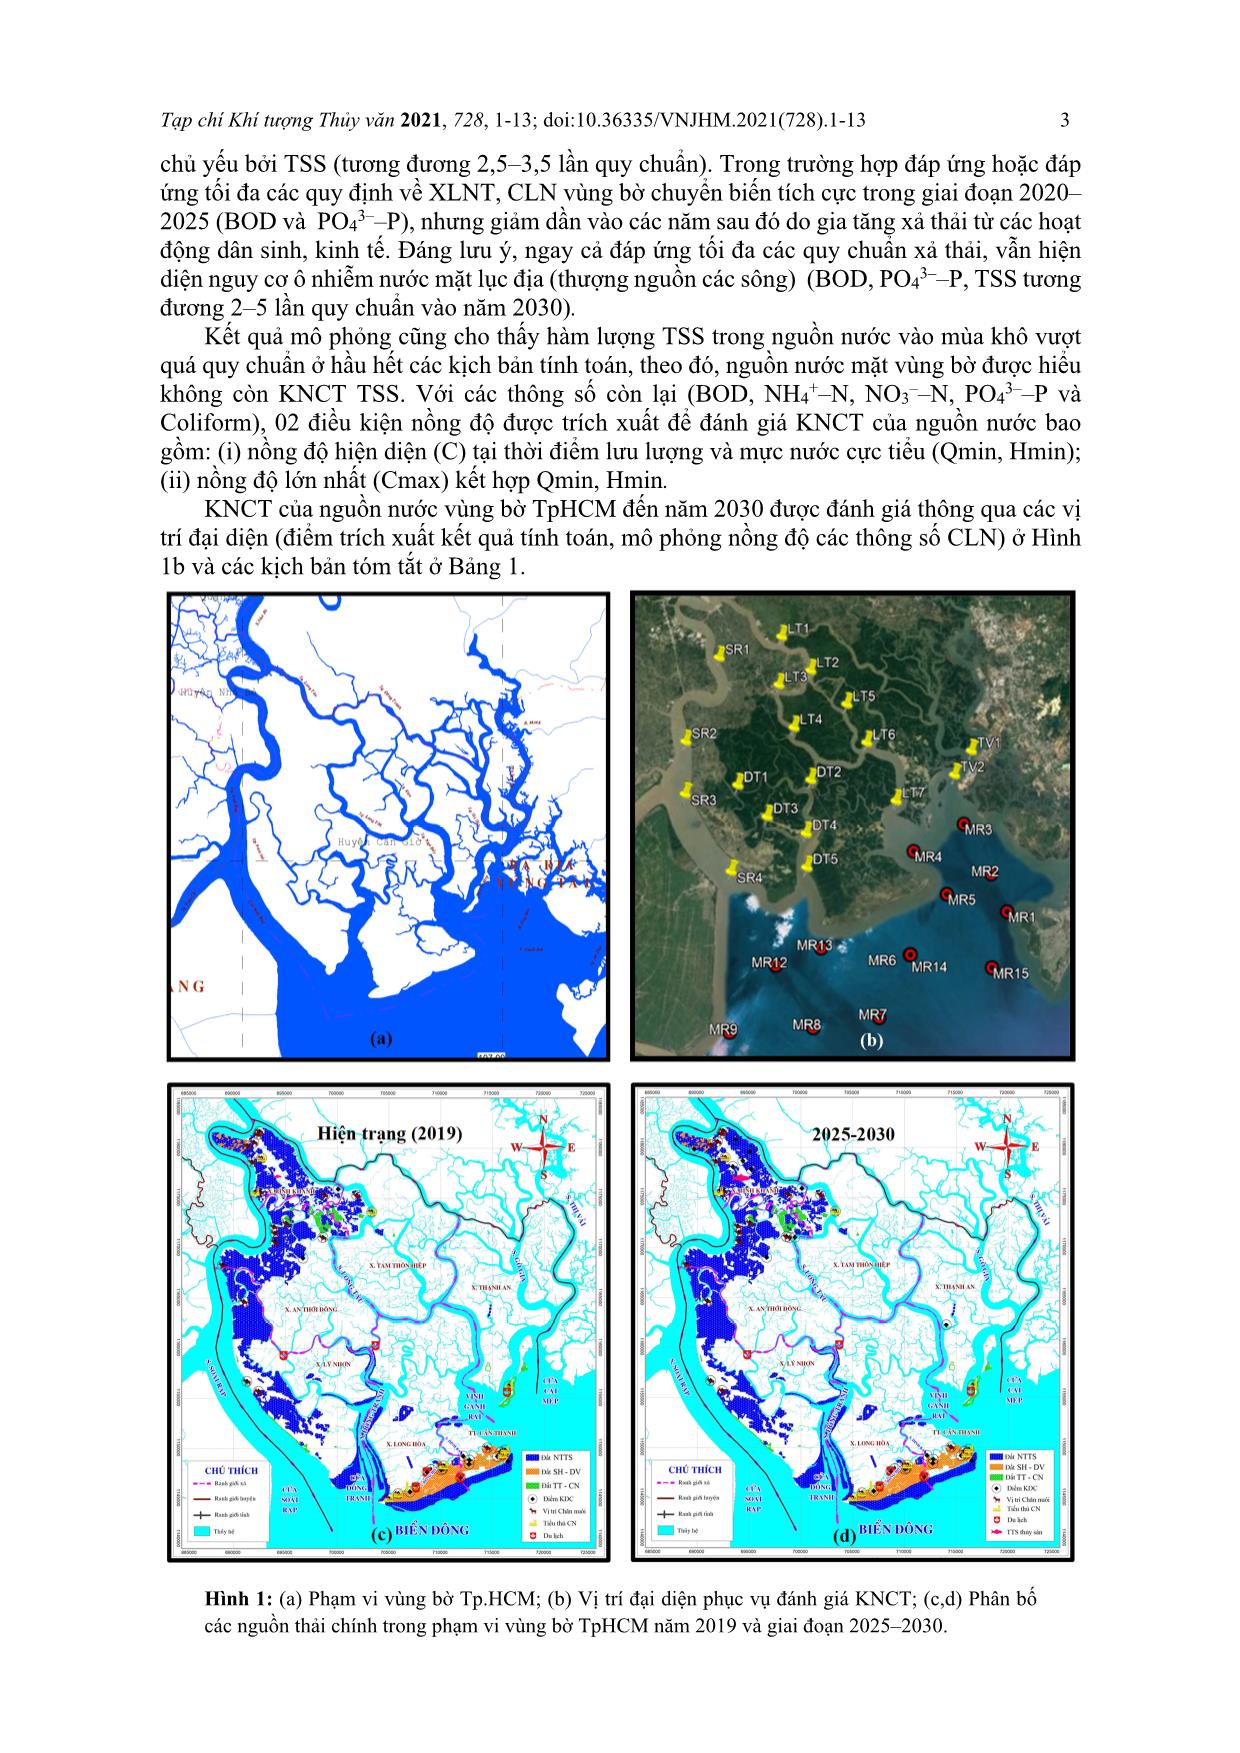 Đánh giá khả năng chịu tải của nguồn nước vùng bờ thành phố Hồ Chí Minh đến năm 2030 và đề xuất giải pháp cải thiện trang 3